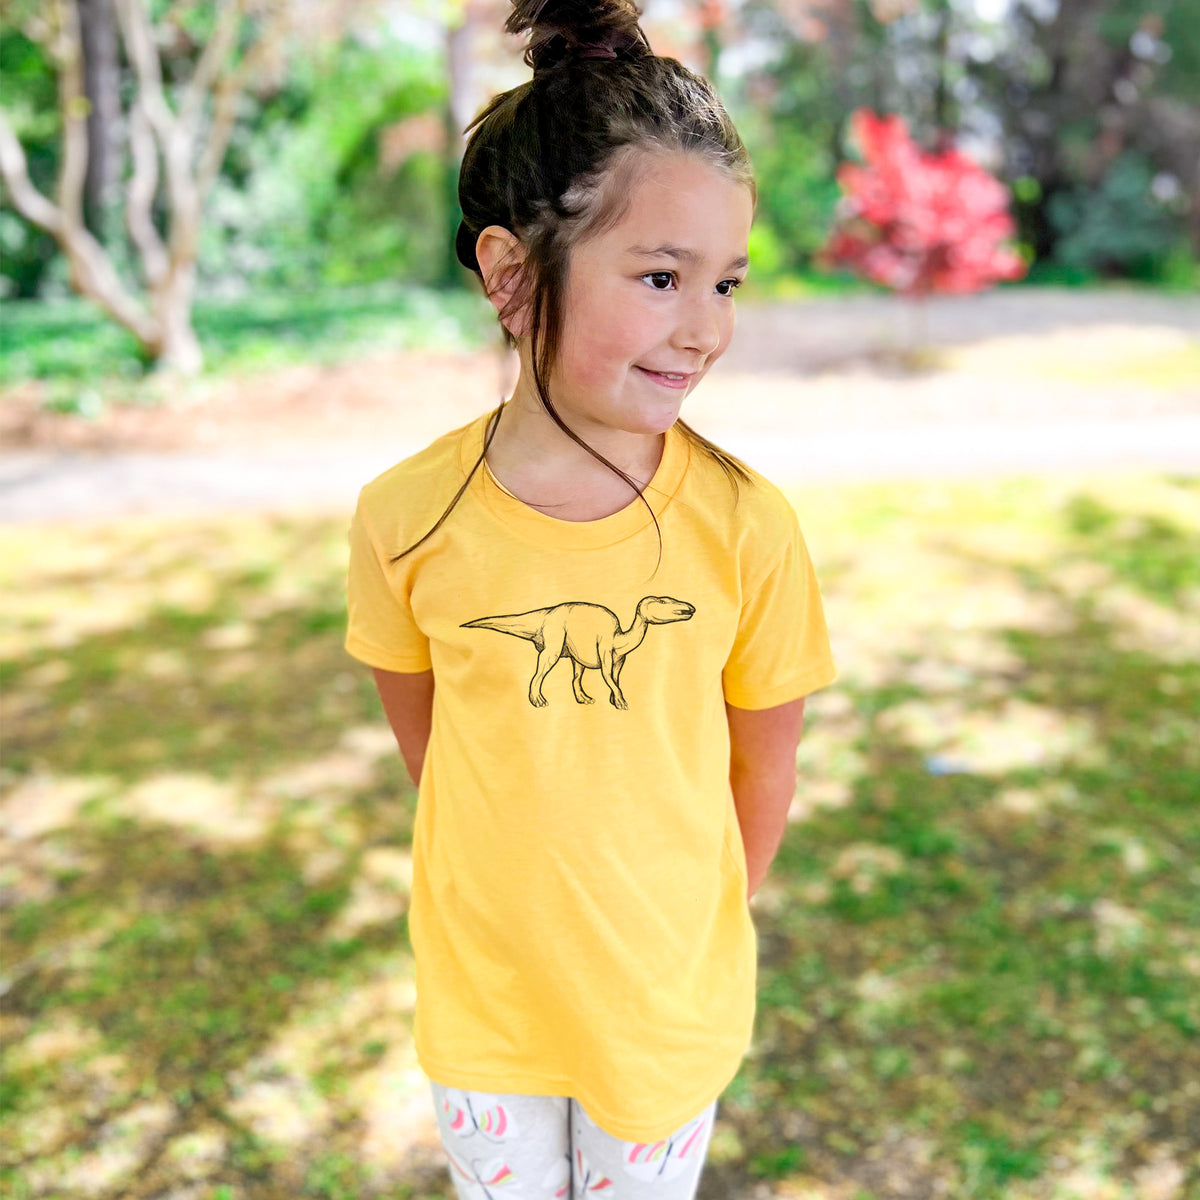 Edmontosaurus Annectens - Kids Shirt